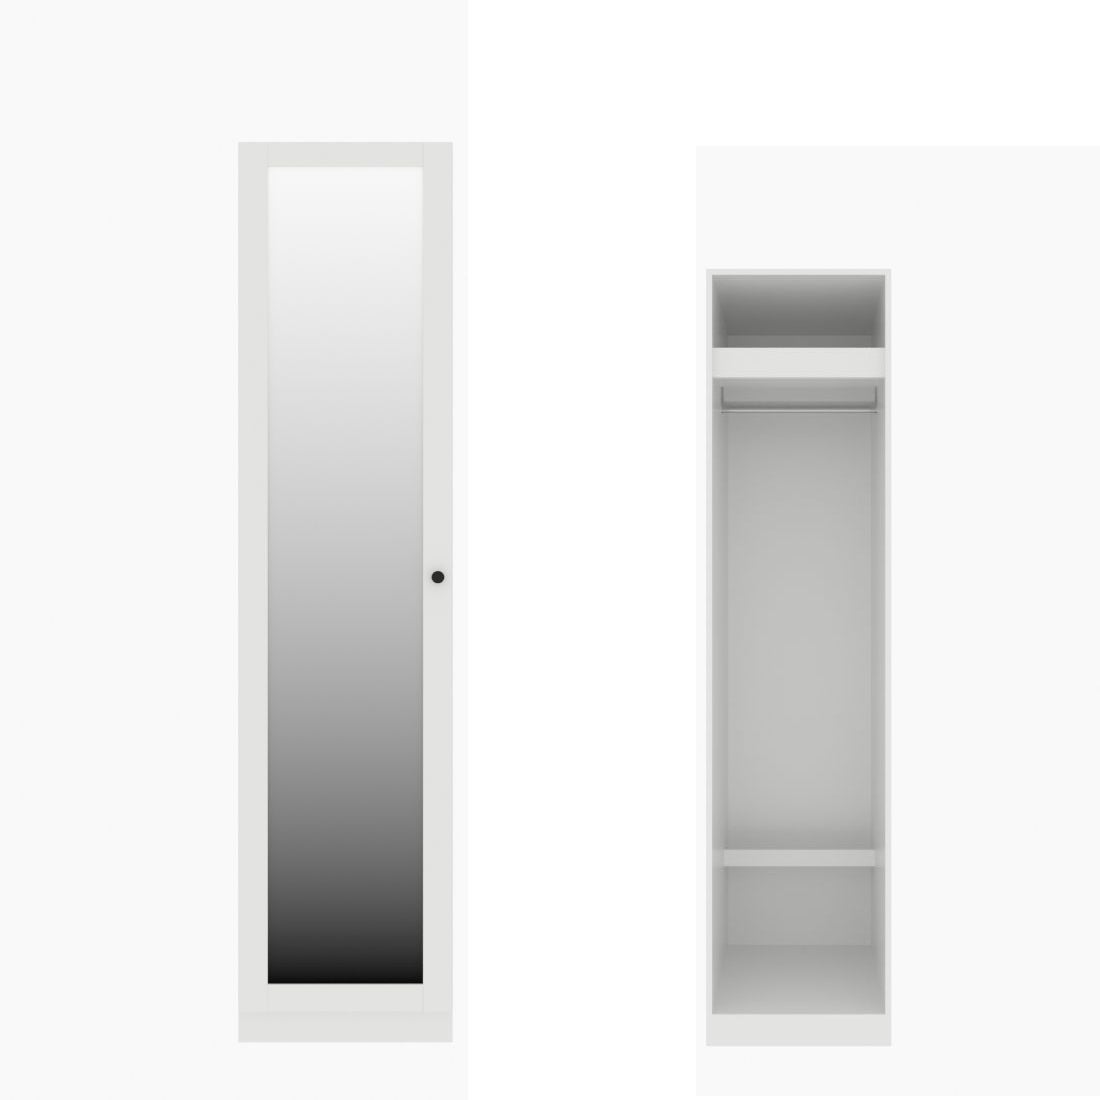 ตู้เสื้อผ้า ราวแขวนโล่ง OP-J (หน้าบานเปิดซ้าย) ขนาด 50 ซม. รุ่น Blox สีขาว&กระจกเงา01